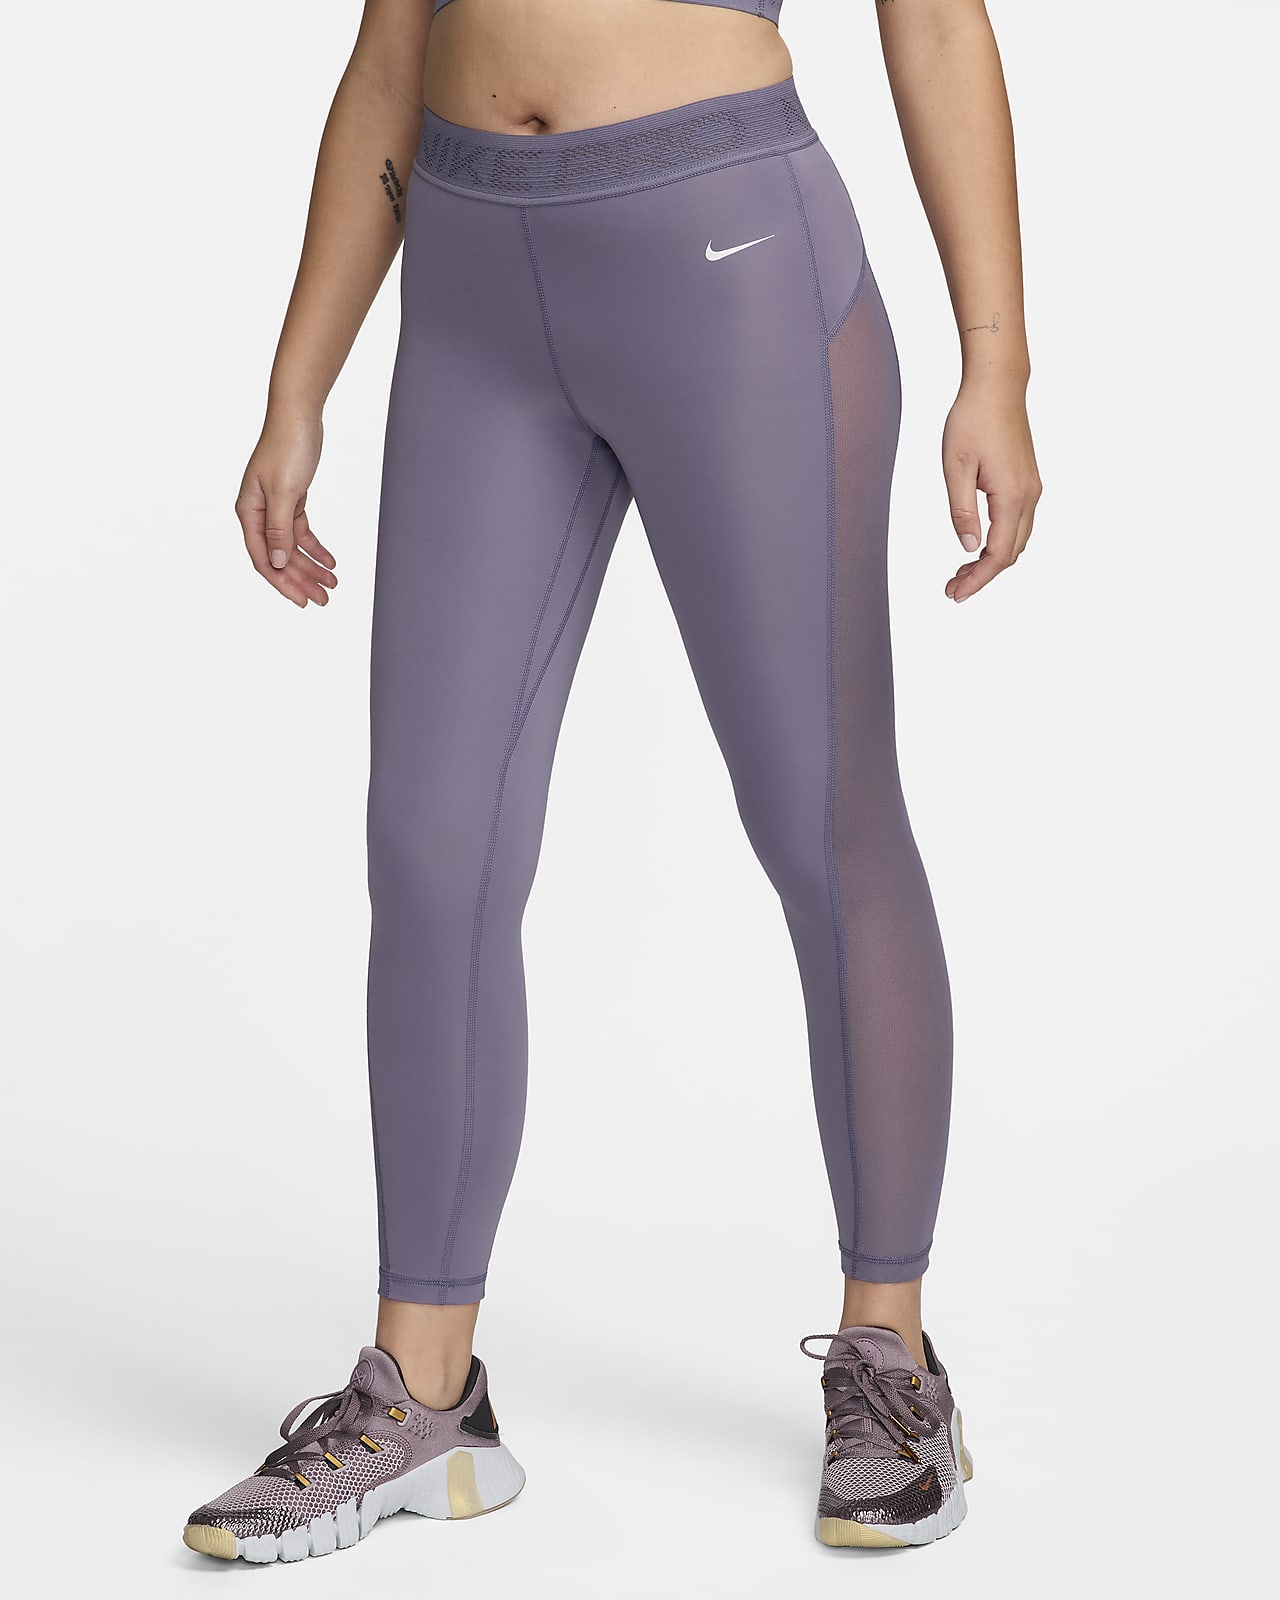 Legging 7/8 taille mi-haute à empiècements en mesh Nike Pro pour Femme